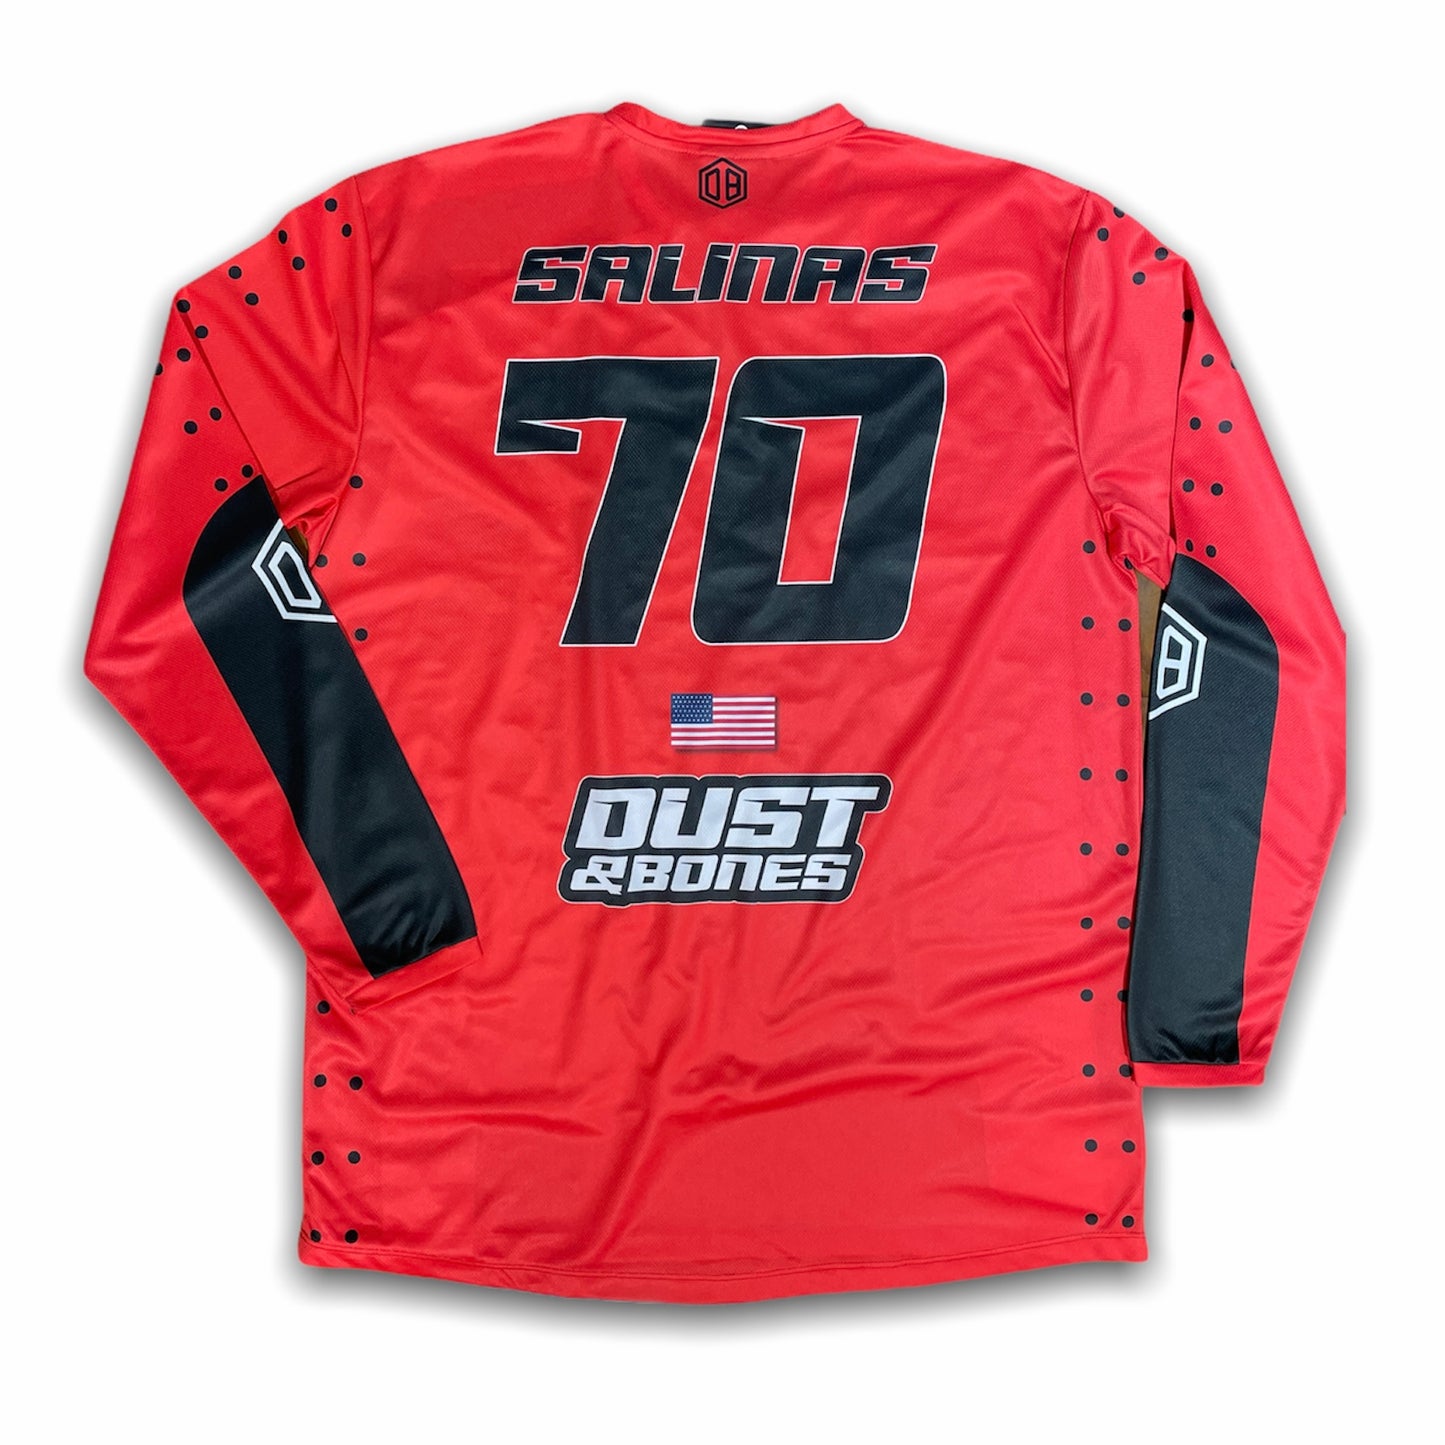 Traje Motocross | Camiseta motocross Dots / Pantalón Motocross Rojo | Equipación Enduro